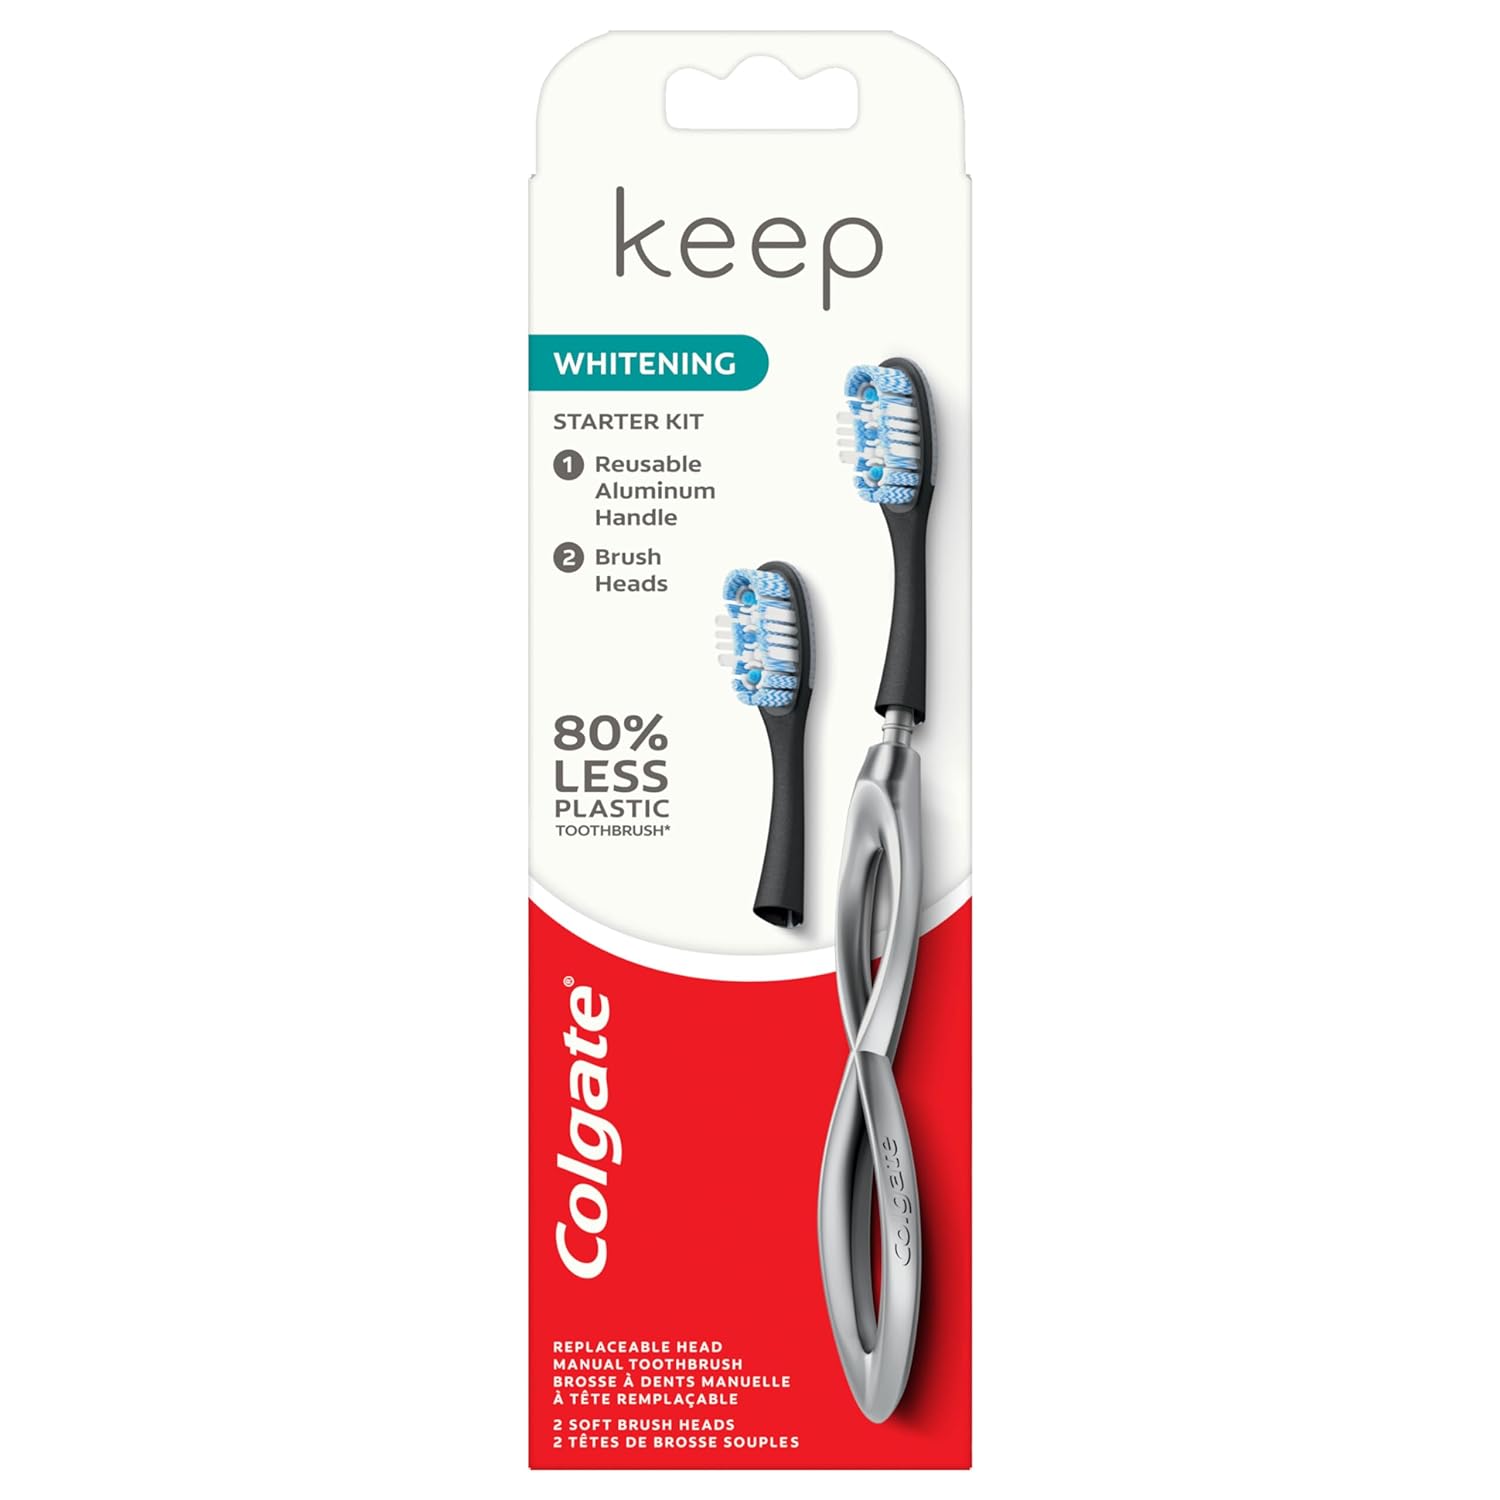 Colgate Keep Manual Toothbrush Whitening Starter Kit - Silver, 1 count